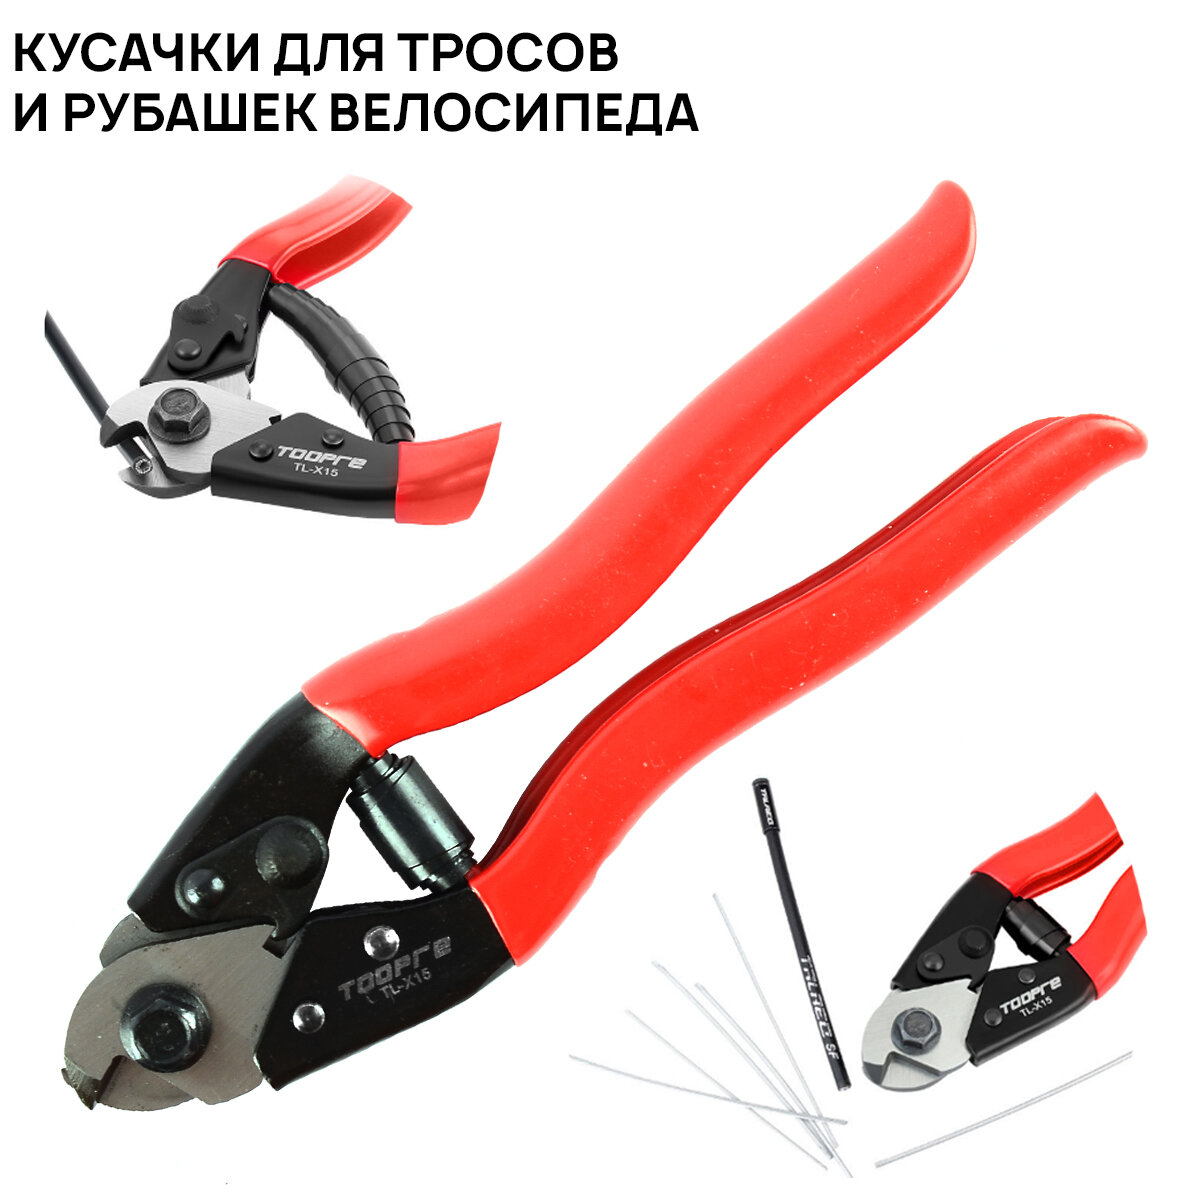 Профессиональные кусачки Aristo VLX. T54 для троса и рубашек велосипеда стальные прорезиненные ручки